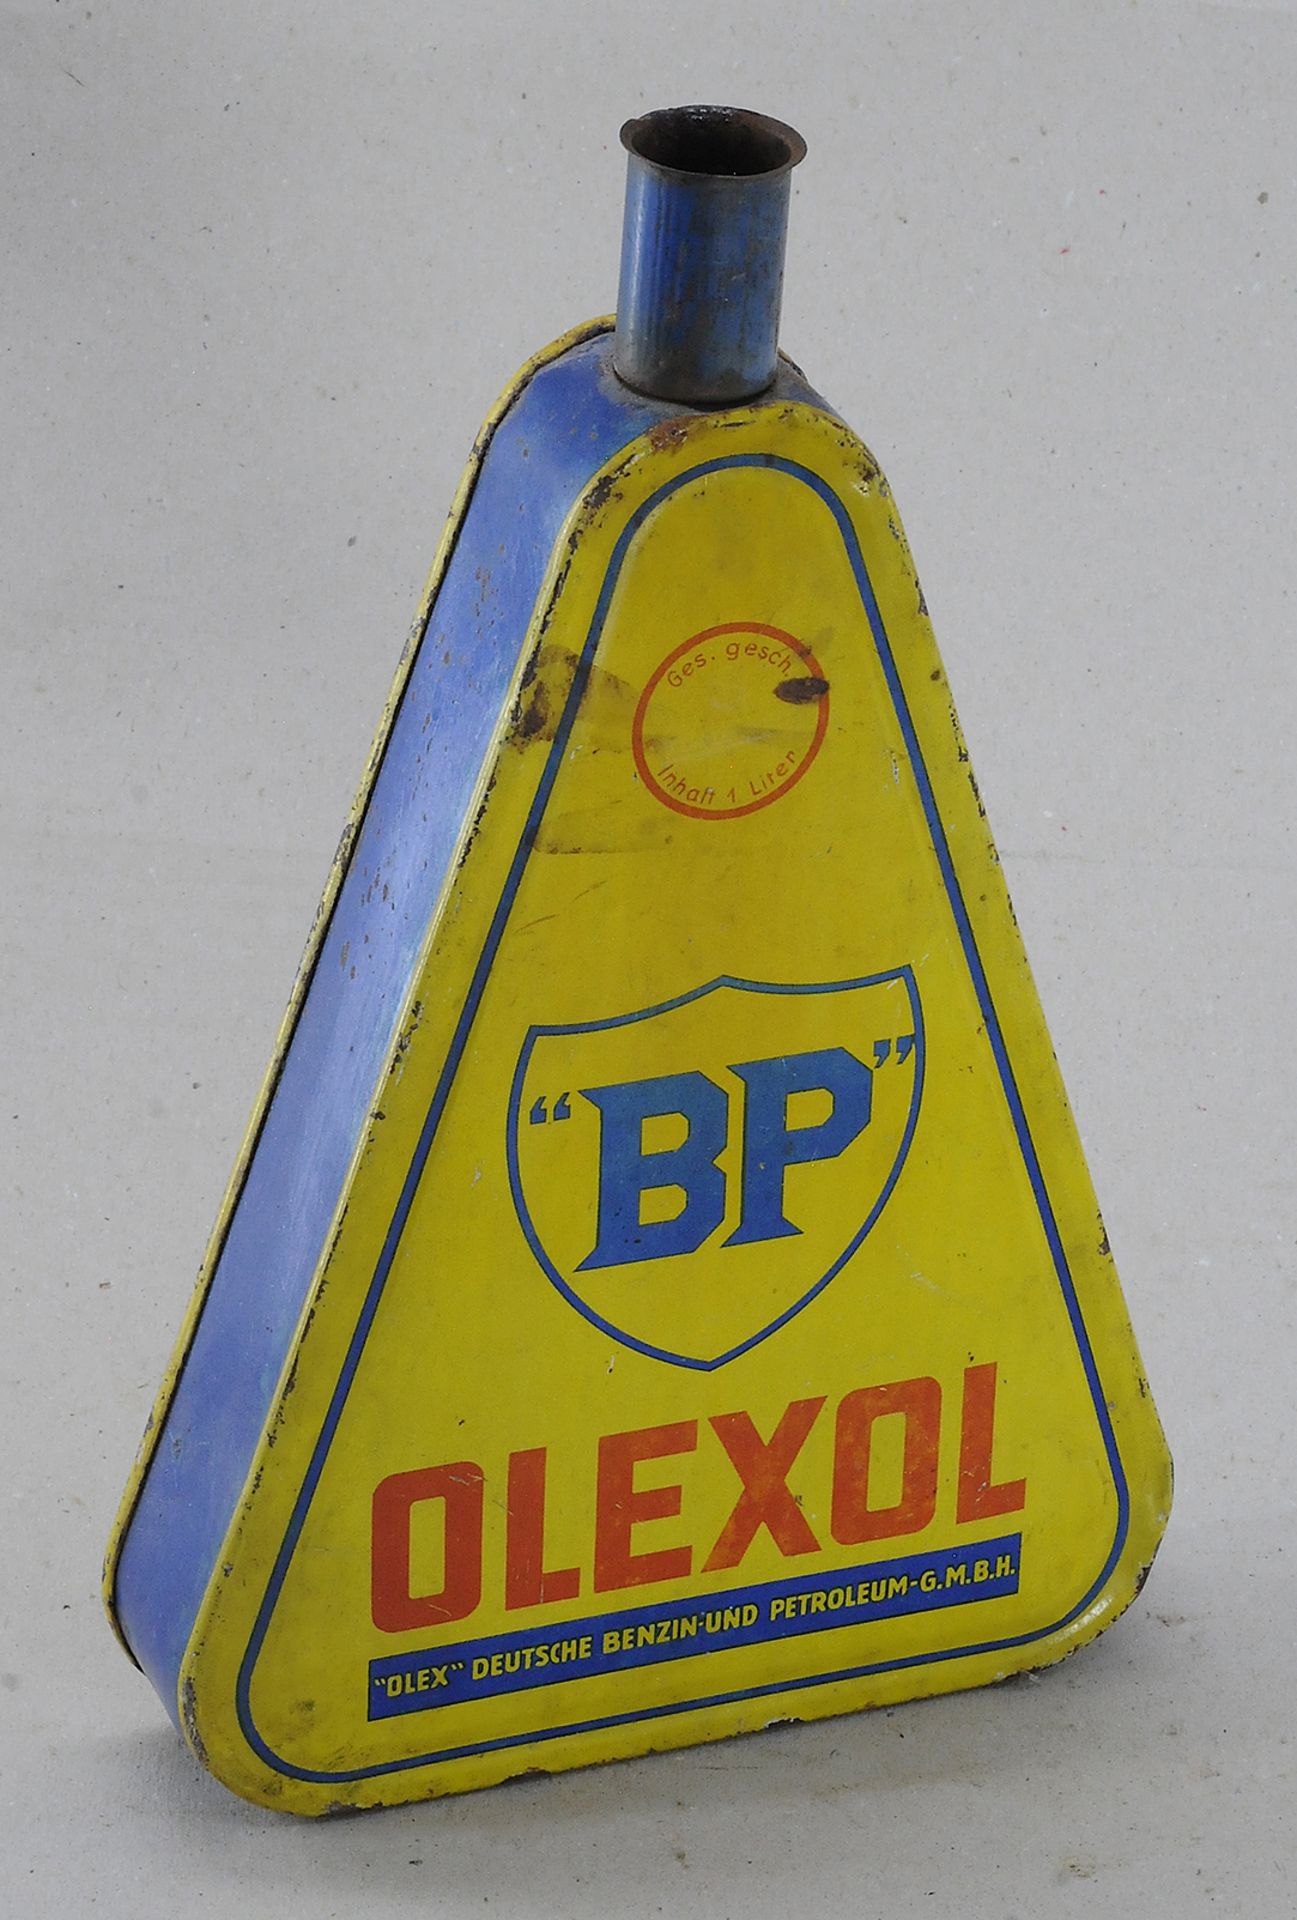 BP Olexol Öldose - Image 2 of 2